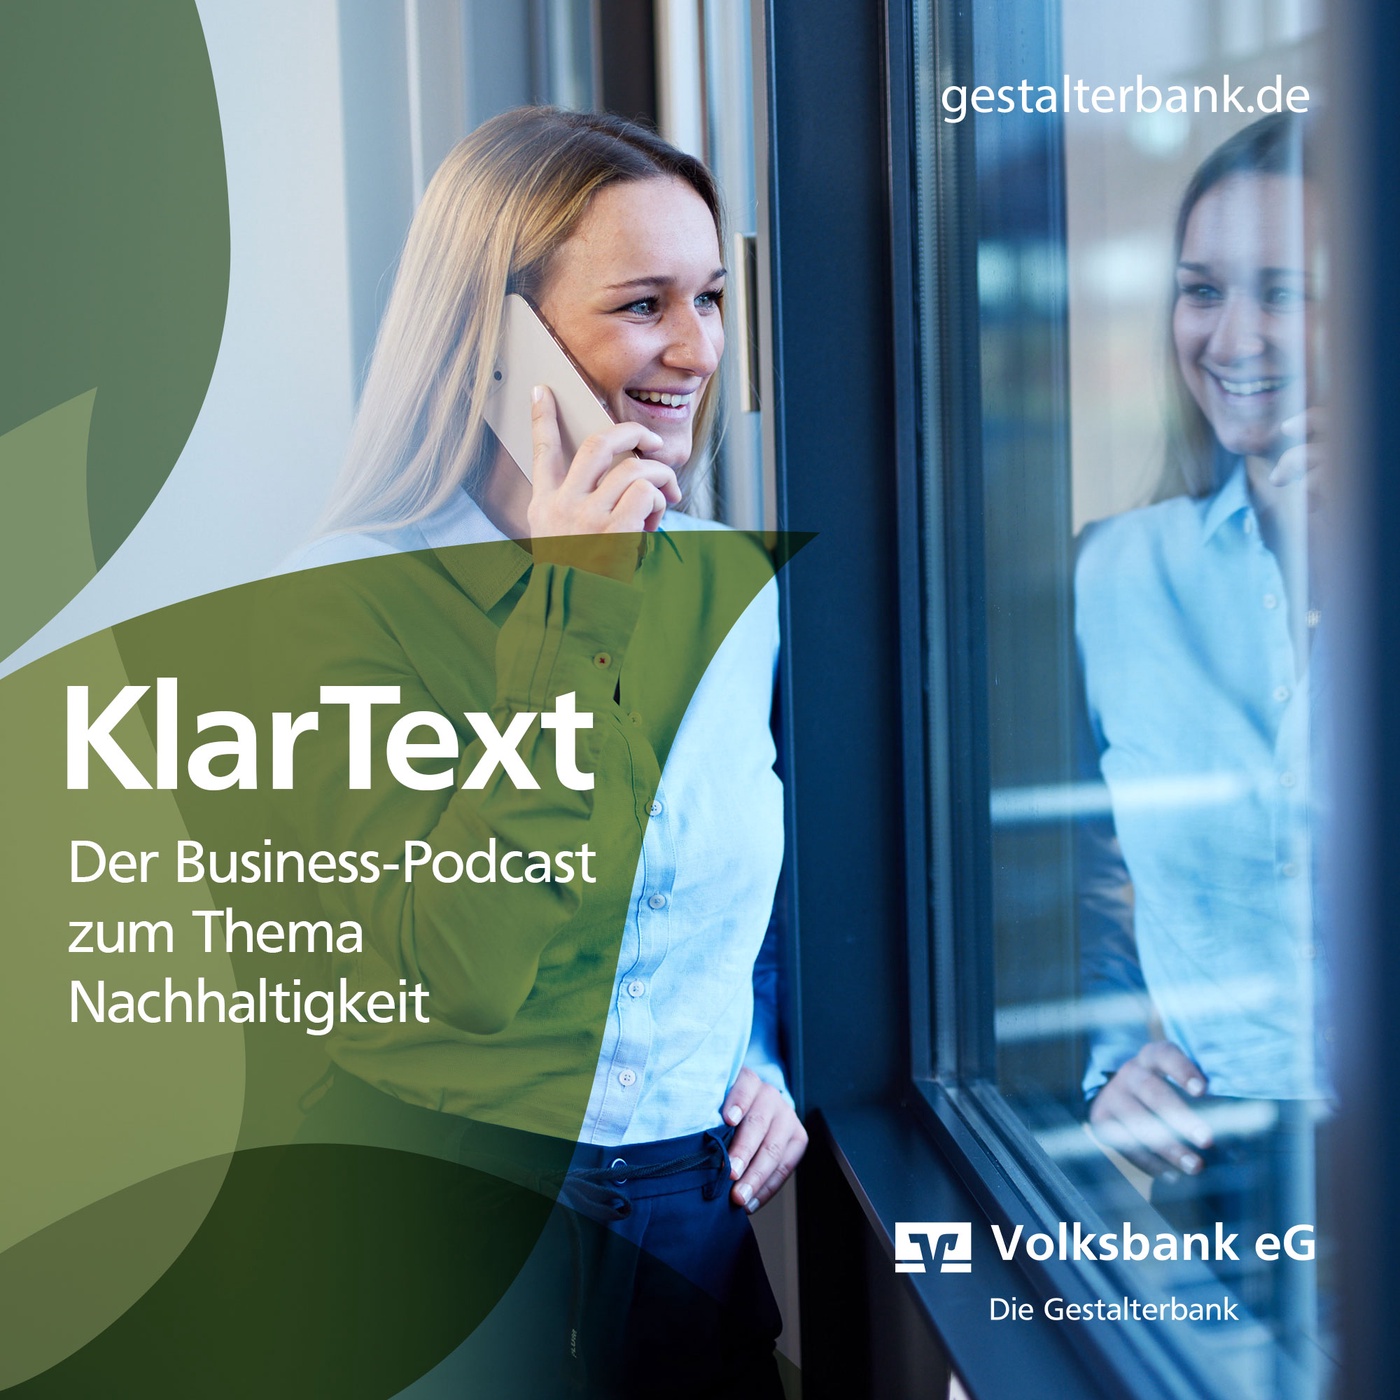 KlarText - Der Business-Podcast zum Thema Nachhaltigkeit